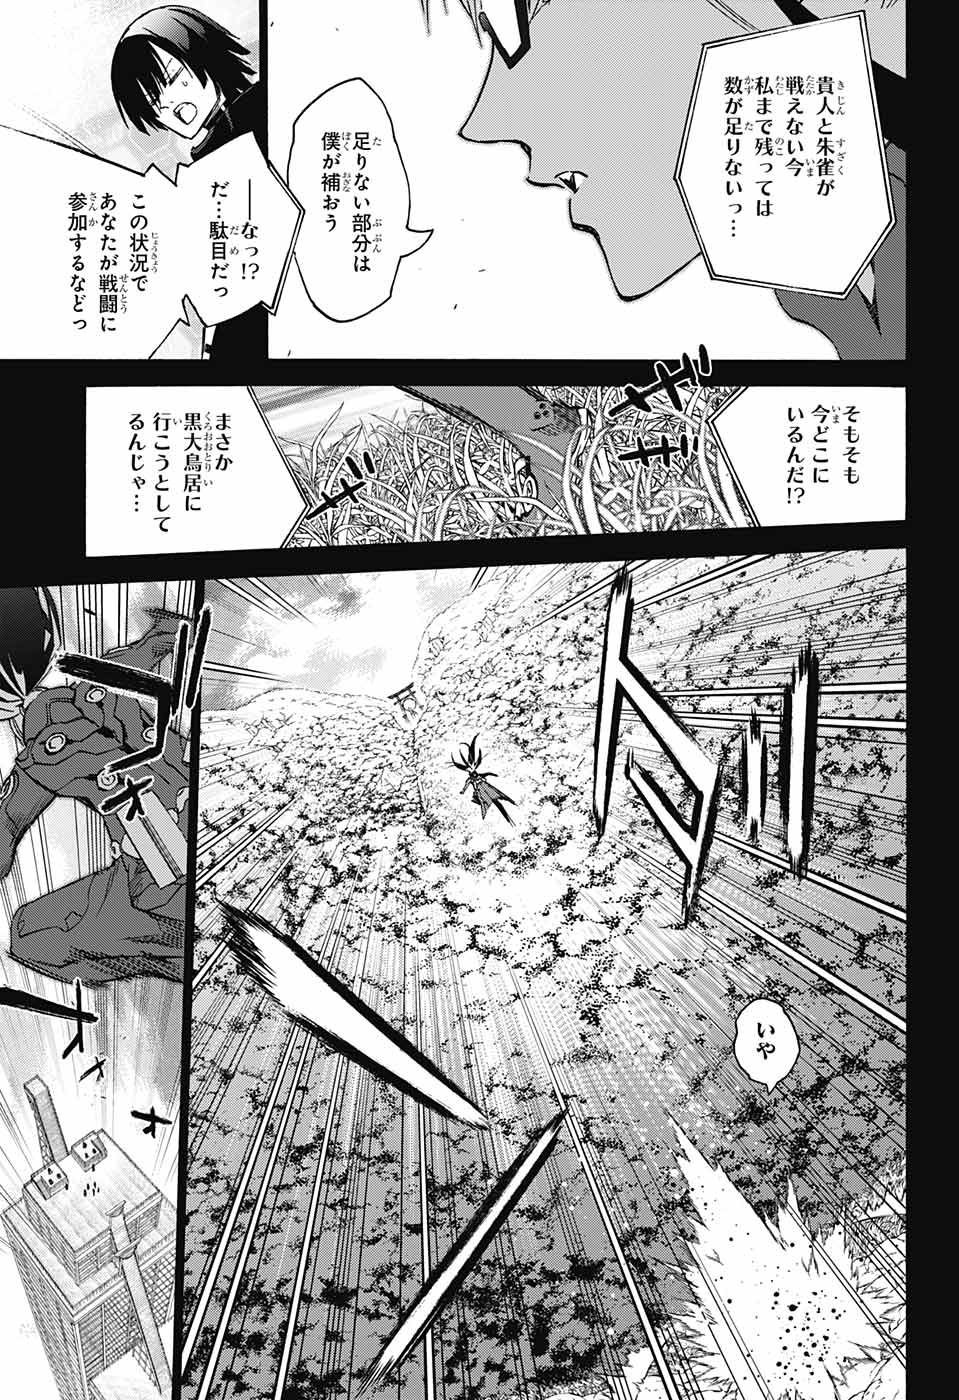 Sousei no Onmyouji - Chapter 62 - Page 3